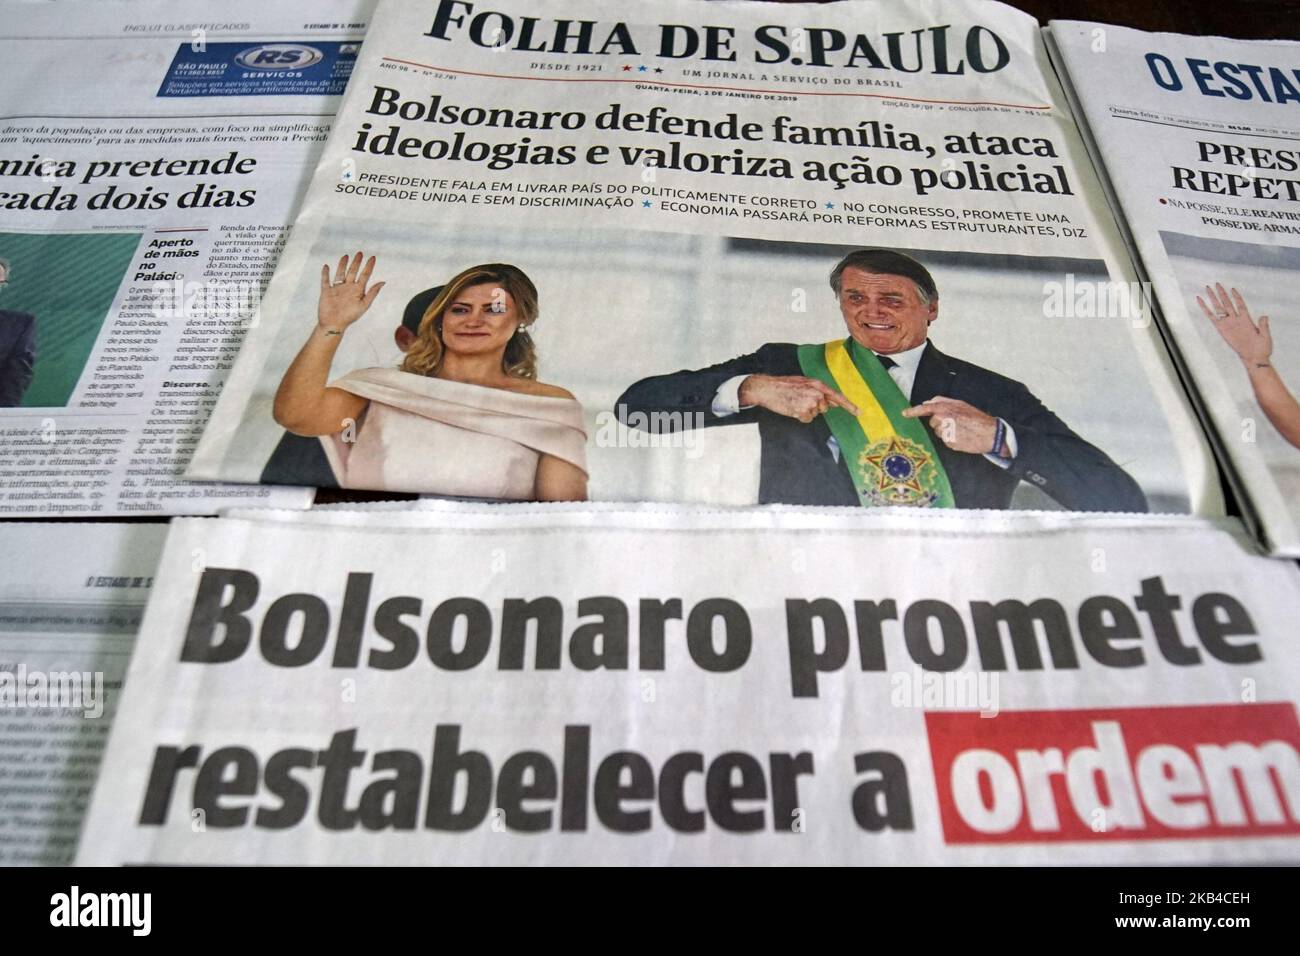 Der neu eingeweihte brasilianische Präsident Jair Bolsonaro sagt, seine Wahl habe das Land von „Sozialismus und politischer Korrektheit“ befreit und er habe sich gelobt, am 2. Januar 2019 in Sao Paulo, Brasilien, gegen Korruption, Kriminalität und wirtschaftliches Missmanagement vorzugehen. Bolsonaro, ein ehemaliger, zum Gesetzgeber verwandter Armeekapitän, der die Militärdiktatur Brasiliens von 1964-1985 offen bewundert, versprach in seinen ersten Äußerungen als Präsident, sich an demokratische Normen zu halten, nachdem seine Tiraden gegen Medien und politische Gegner Unbehagen schürten.während die Anleger hoffen, dass Bolsonaros freie Marktposition die brasilianische Wirtschaft - die Umwelt - wiederbeleben wird Stockfoto